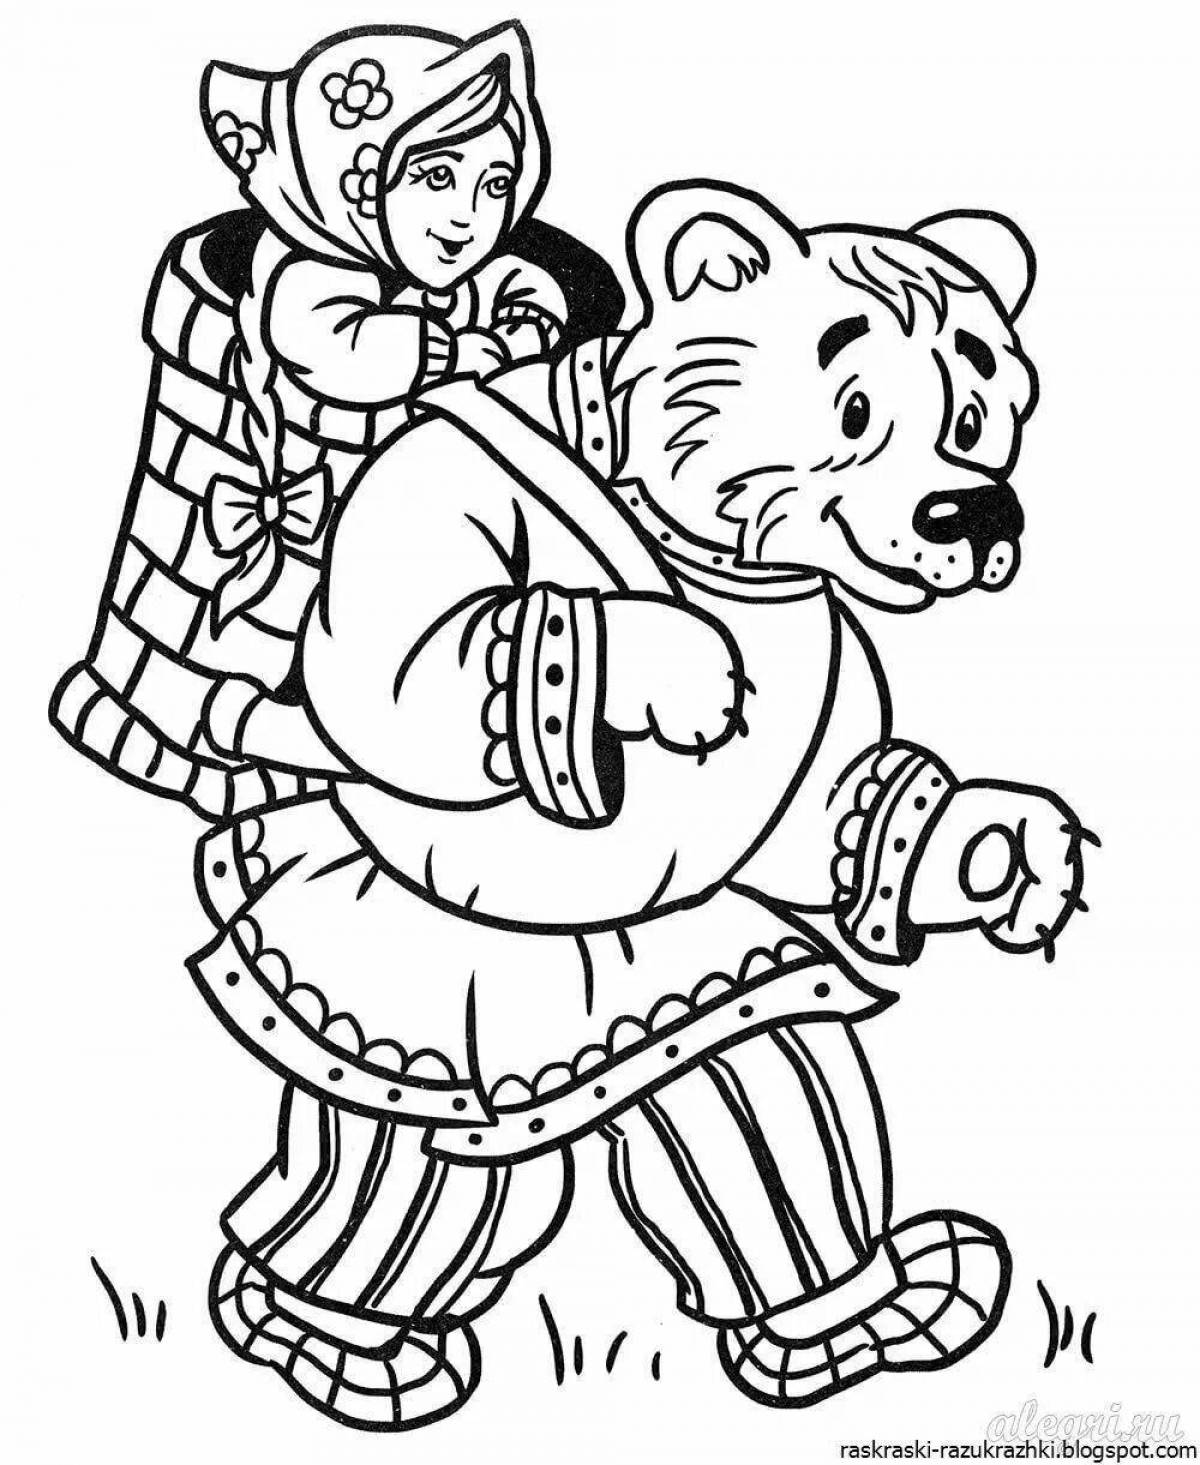 Маша и медведь сказка raskraska